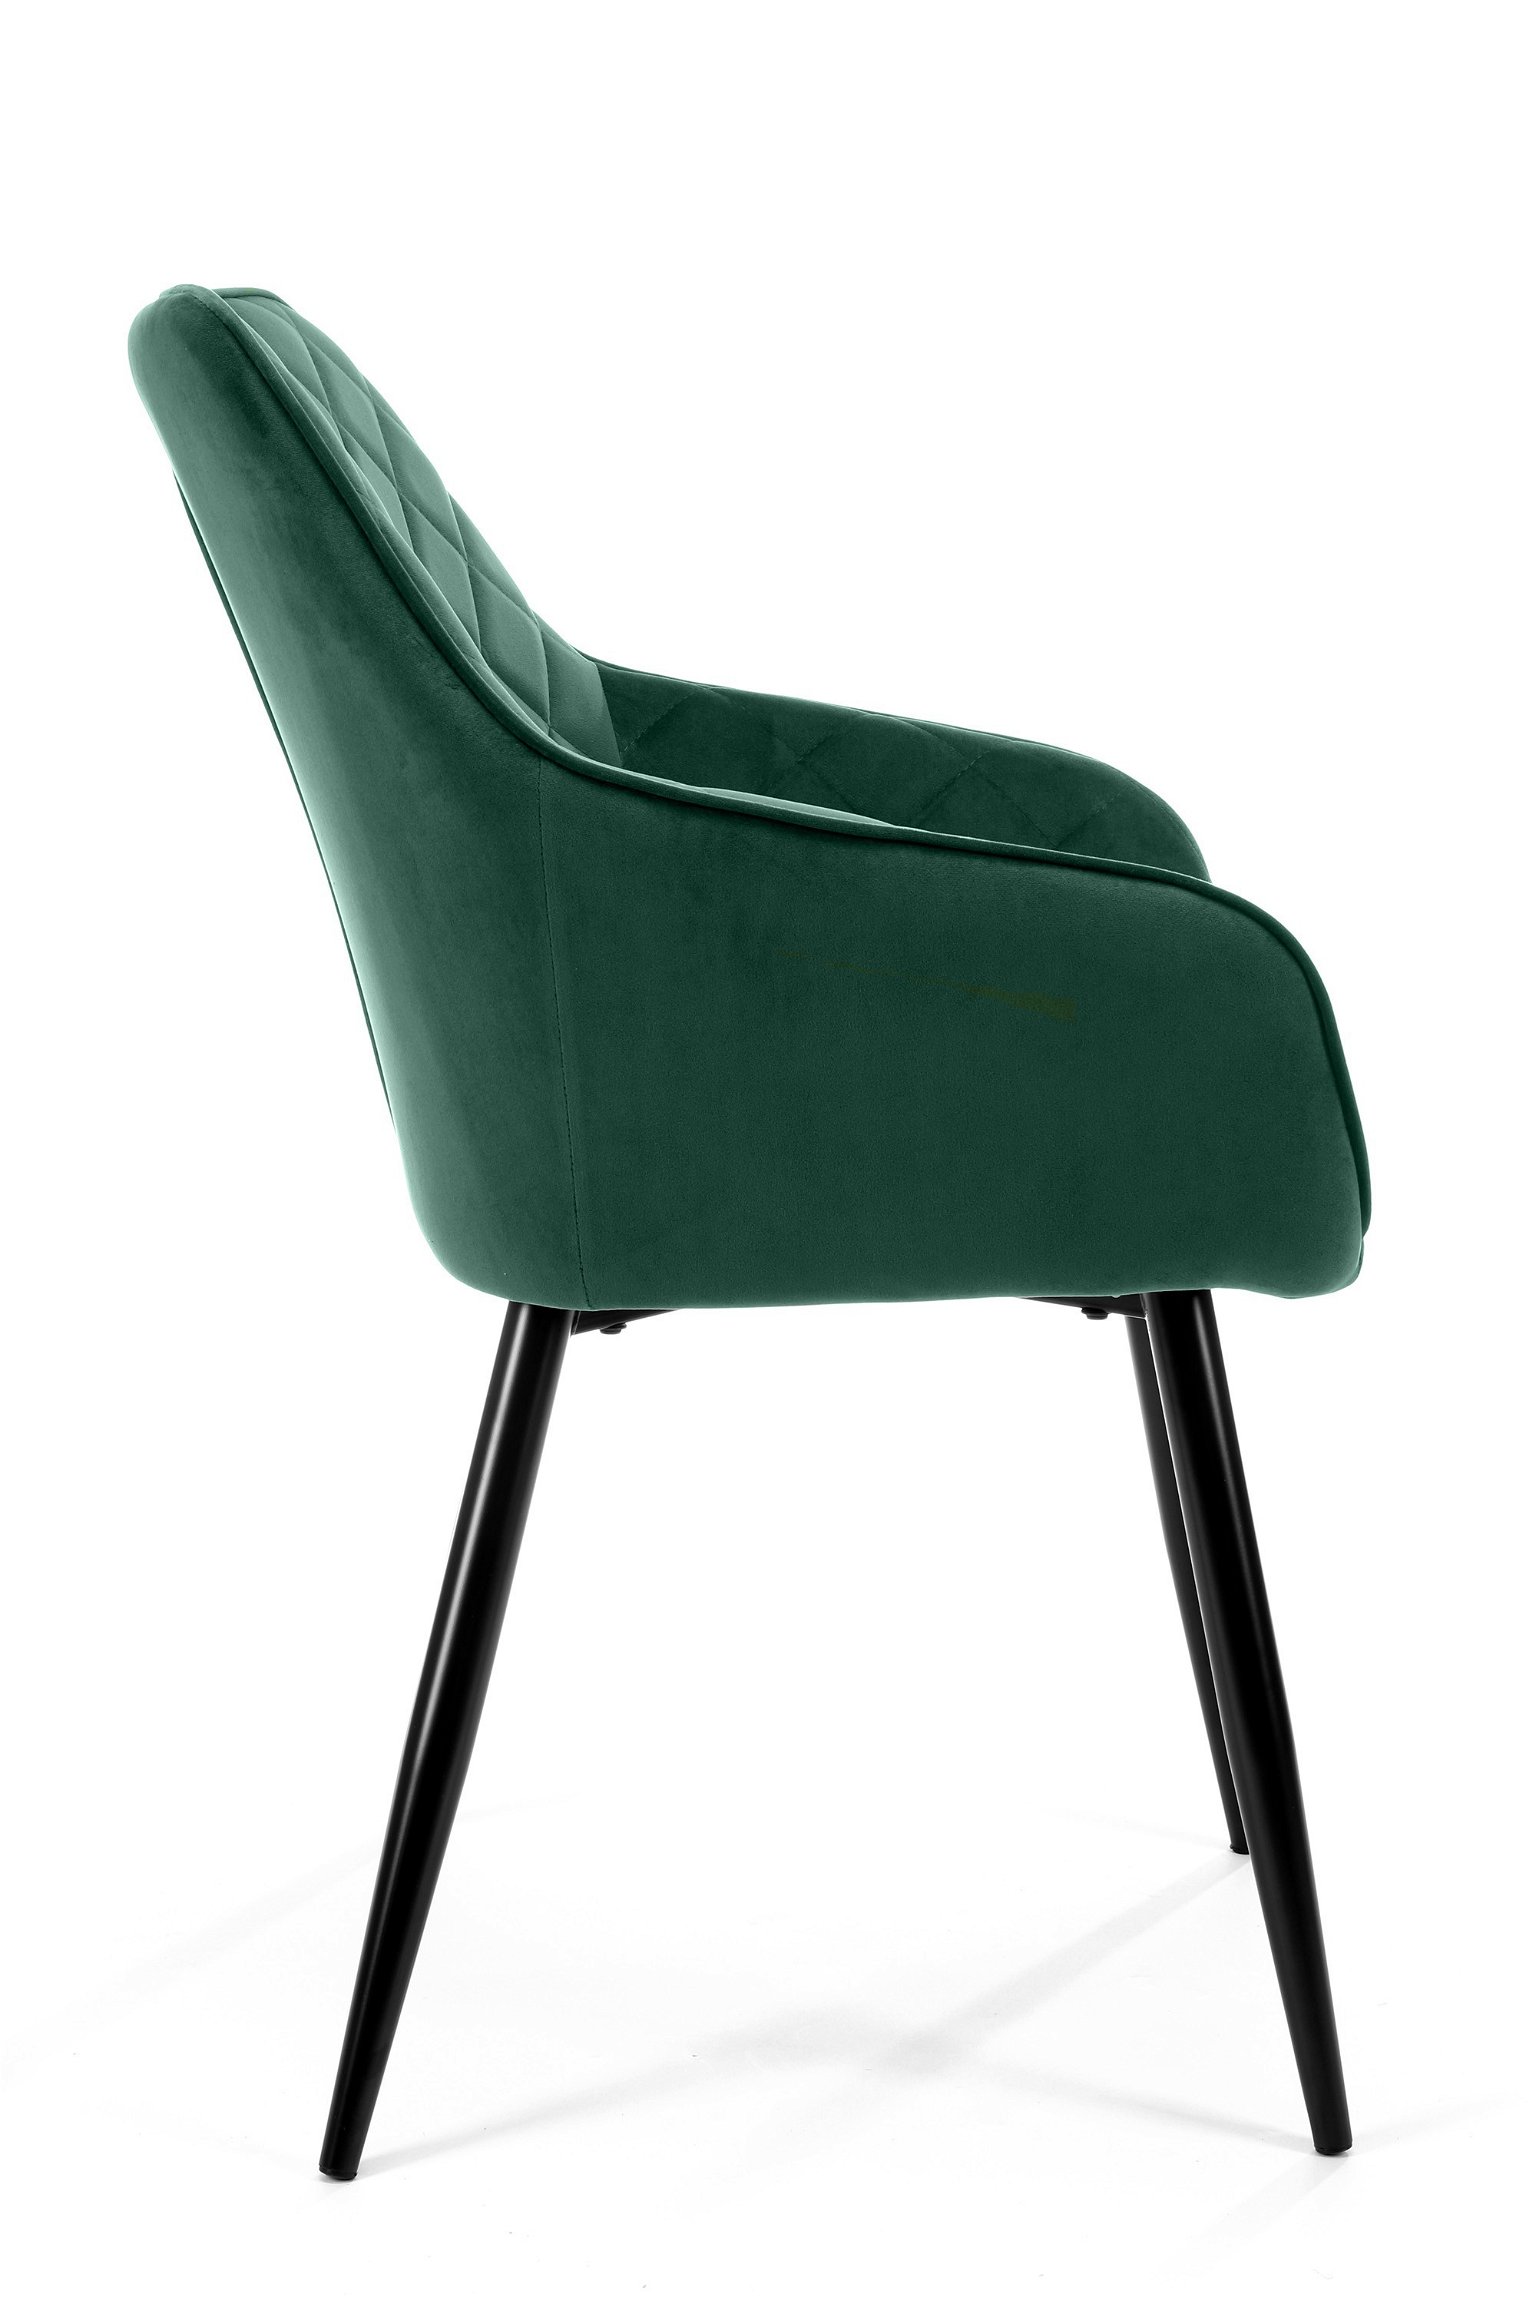 2-jų kėdžių komplektas SJ.082, žalia - 3